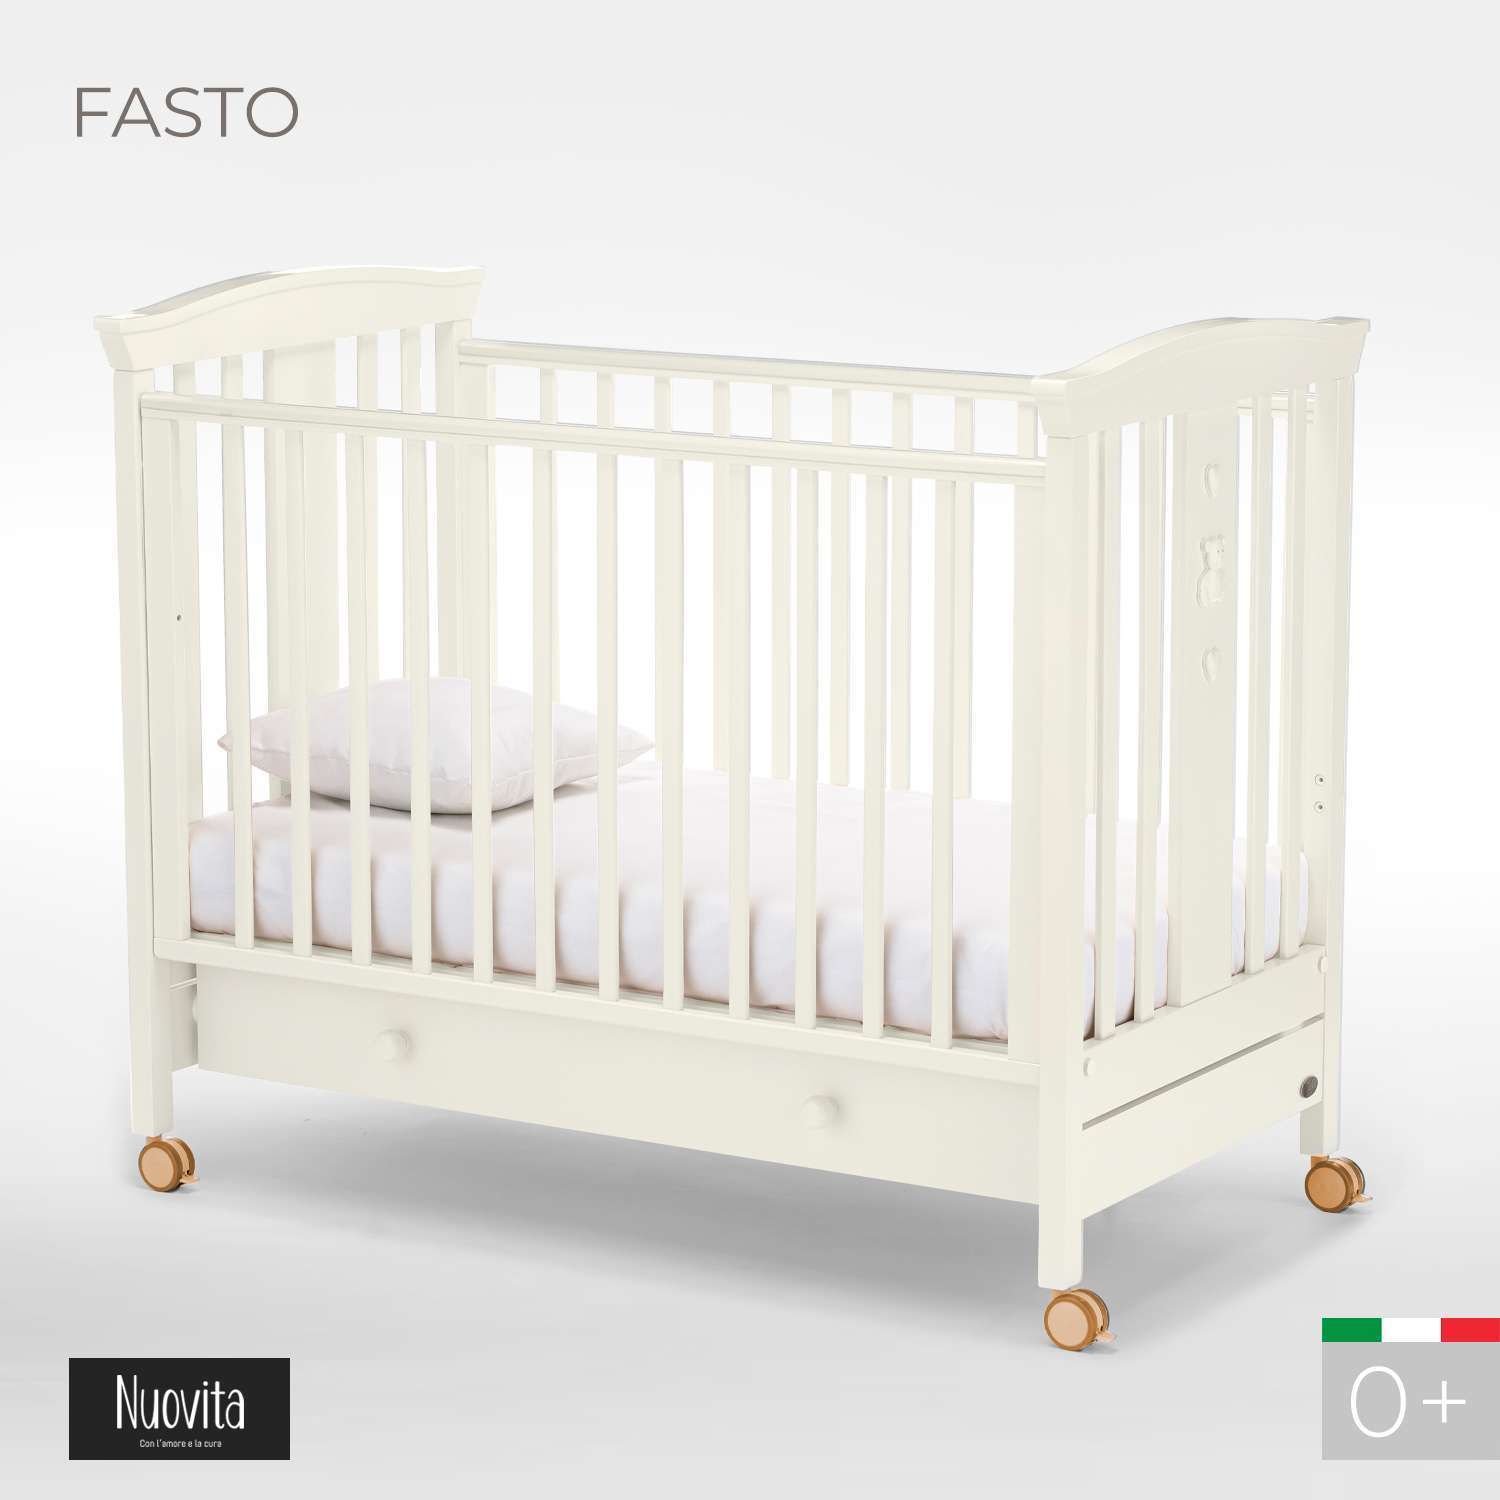 Детская кроватка Nuovita Fasto прямоугольная, (ваниль) - фото 2